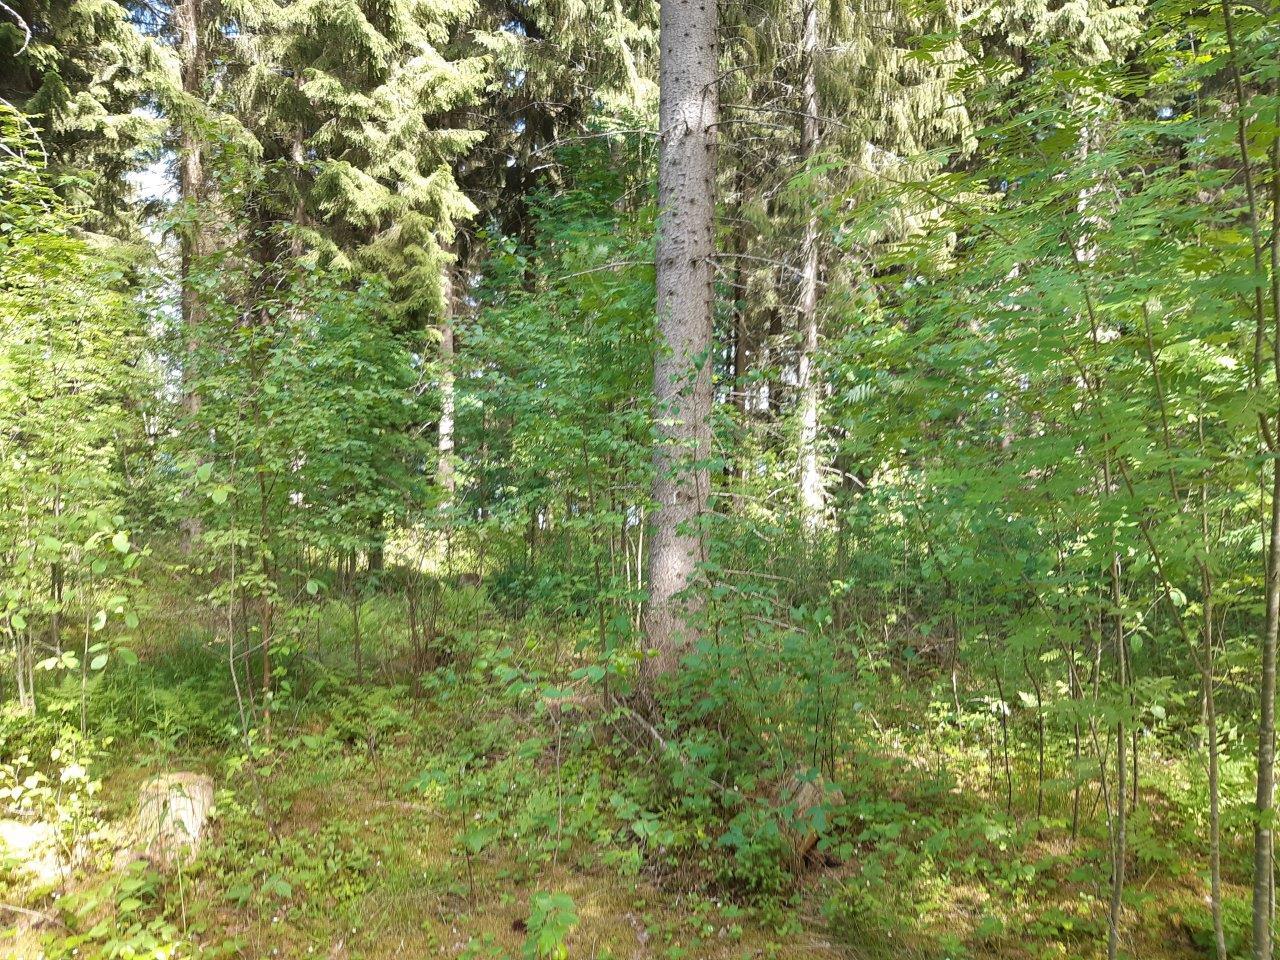 Metsää jossa etualalla nuoria pihlajia ja taustalla varttuneempia kuusia.